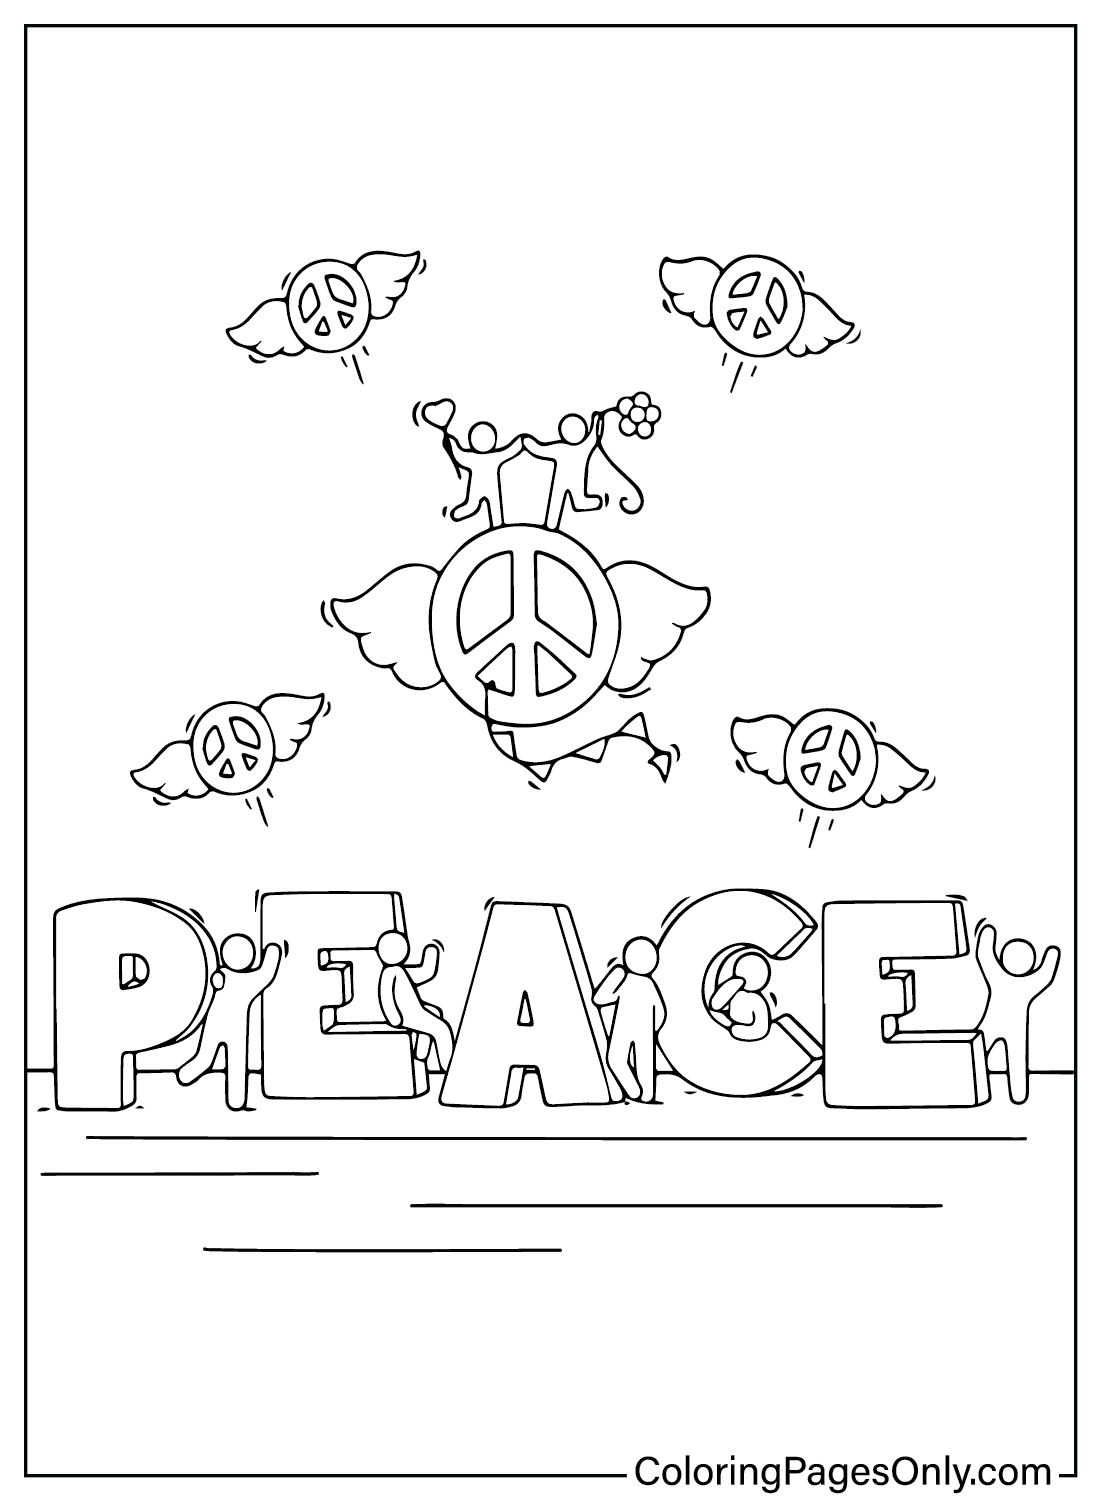 Internationale Dag van de Vrede Kleurplaten voor kinderen van Internationale Dag van de Vrede